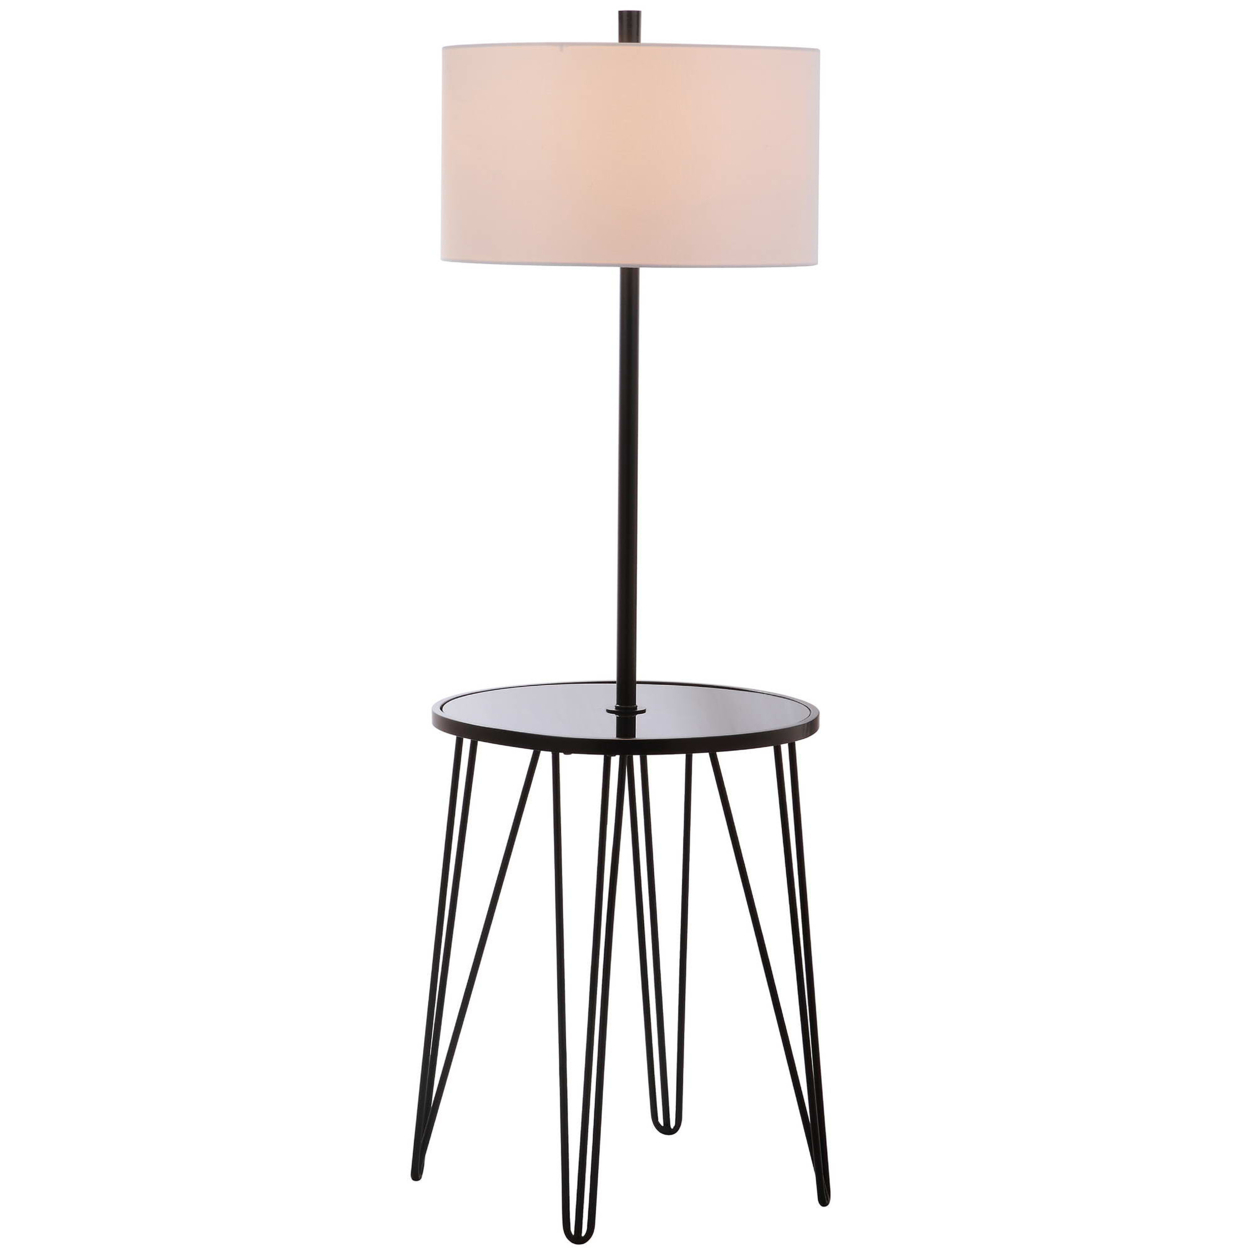 SAFAVIEH Ciro Floor Lamp Side Table , Black / White ,